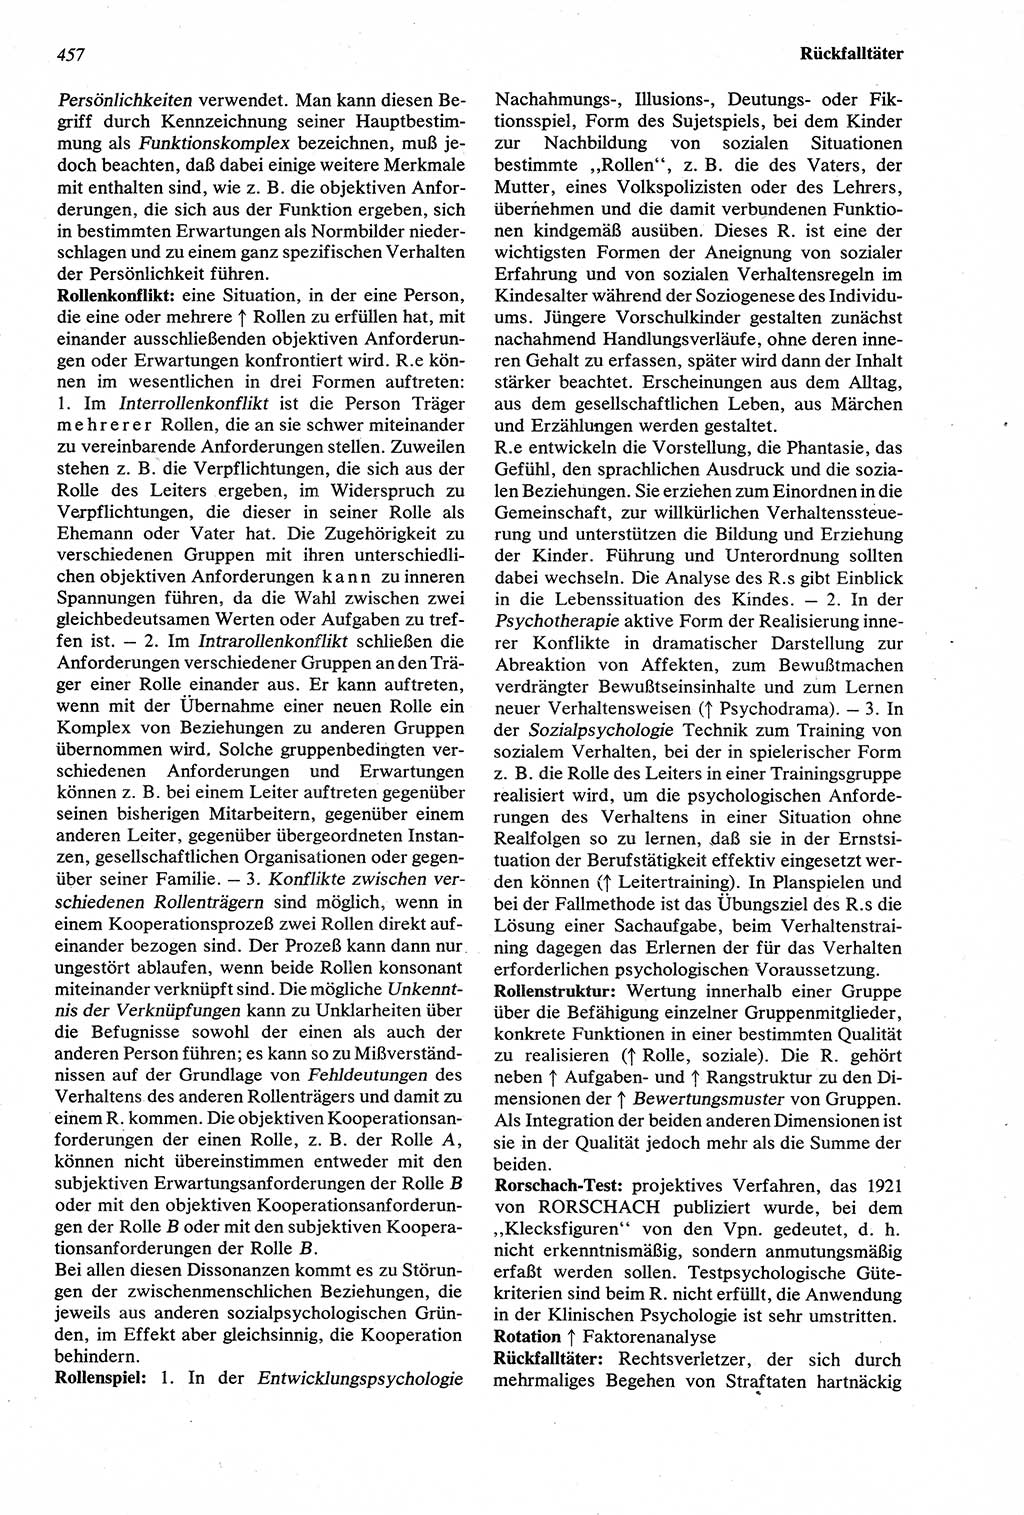 Wörterbuch der Psychologie [Deutsche Demokratische Republik (DDR)] 1976, Seite 457 (Wb. Psych. DDR 1976, S. 457)